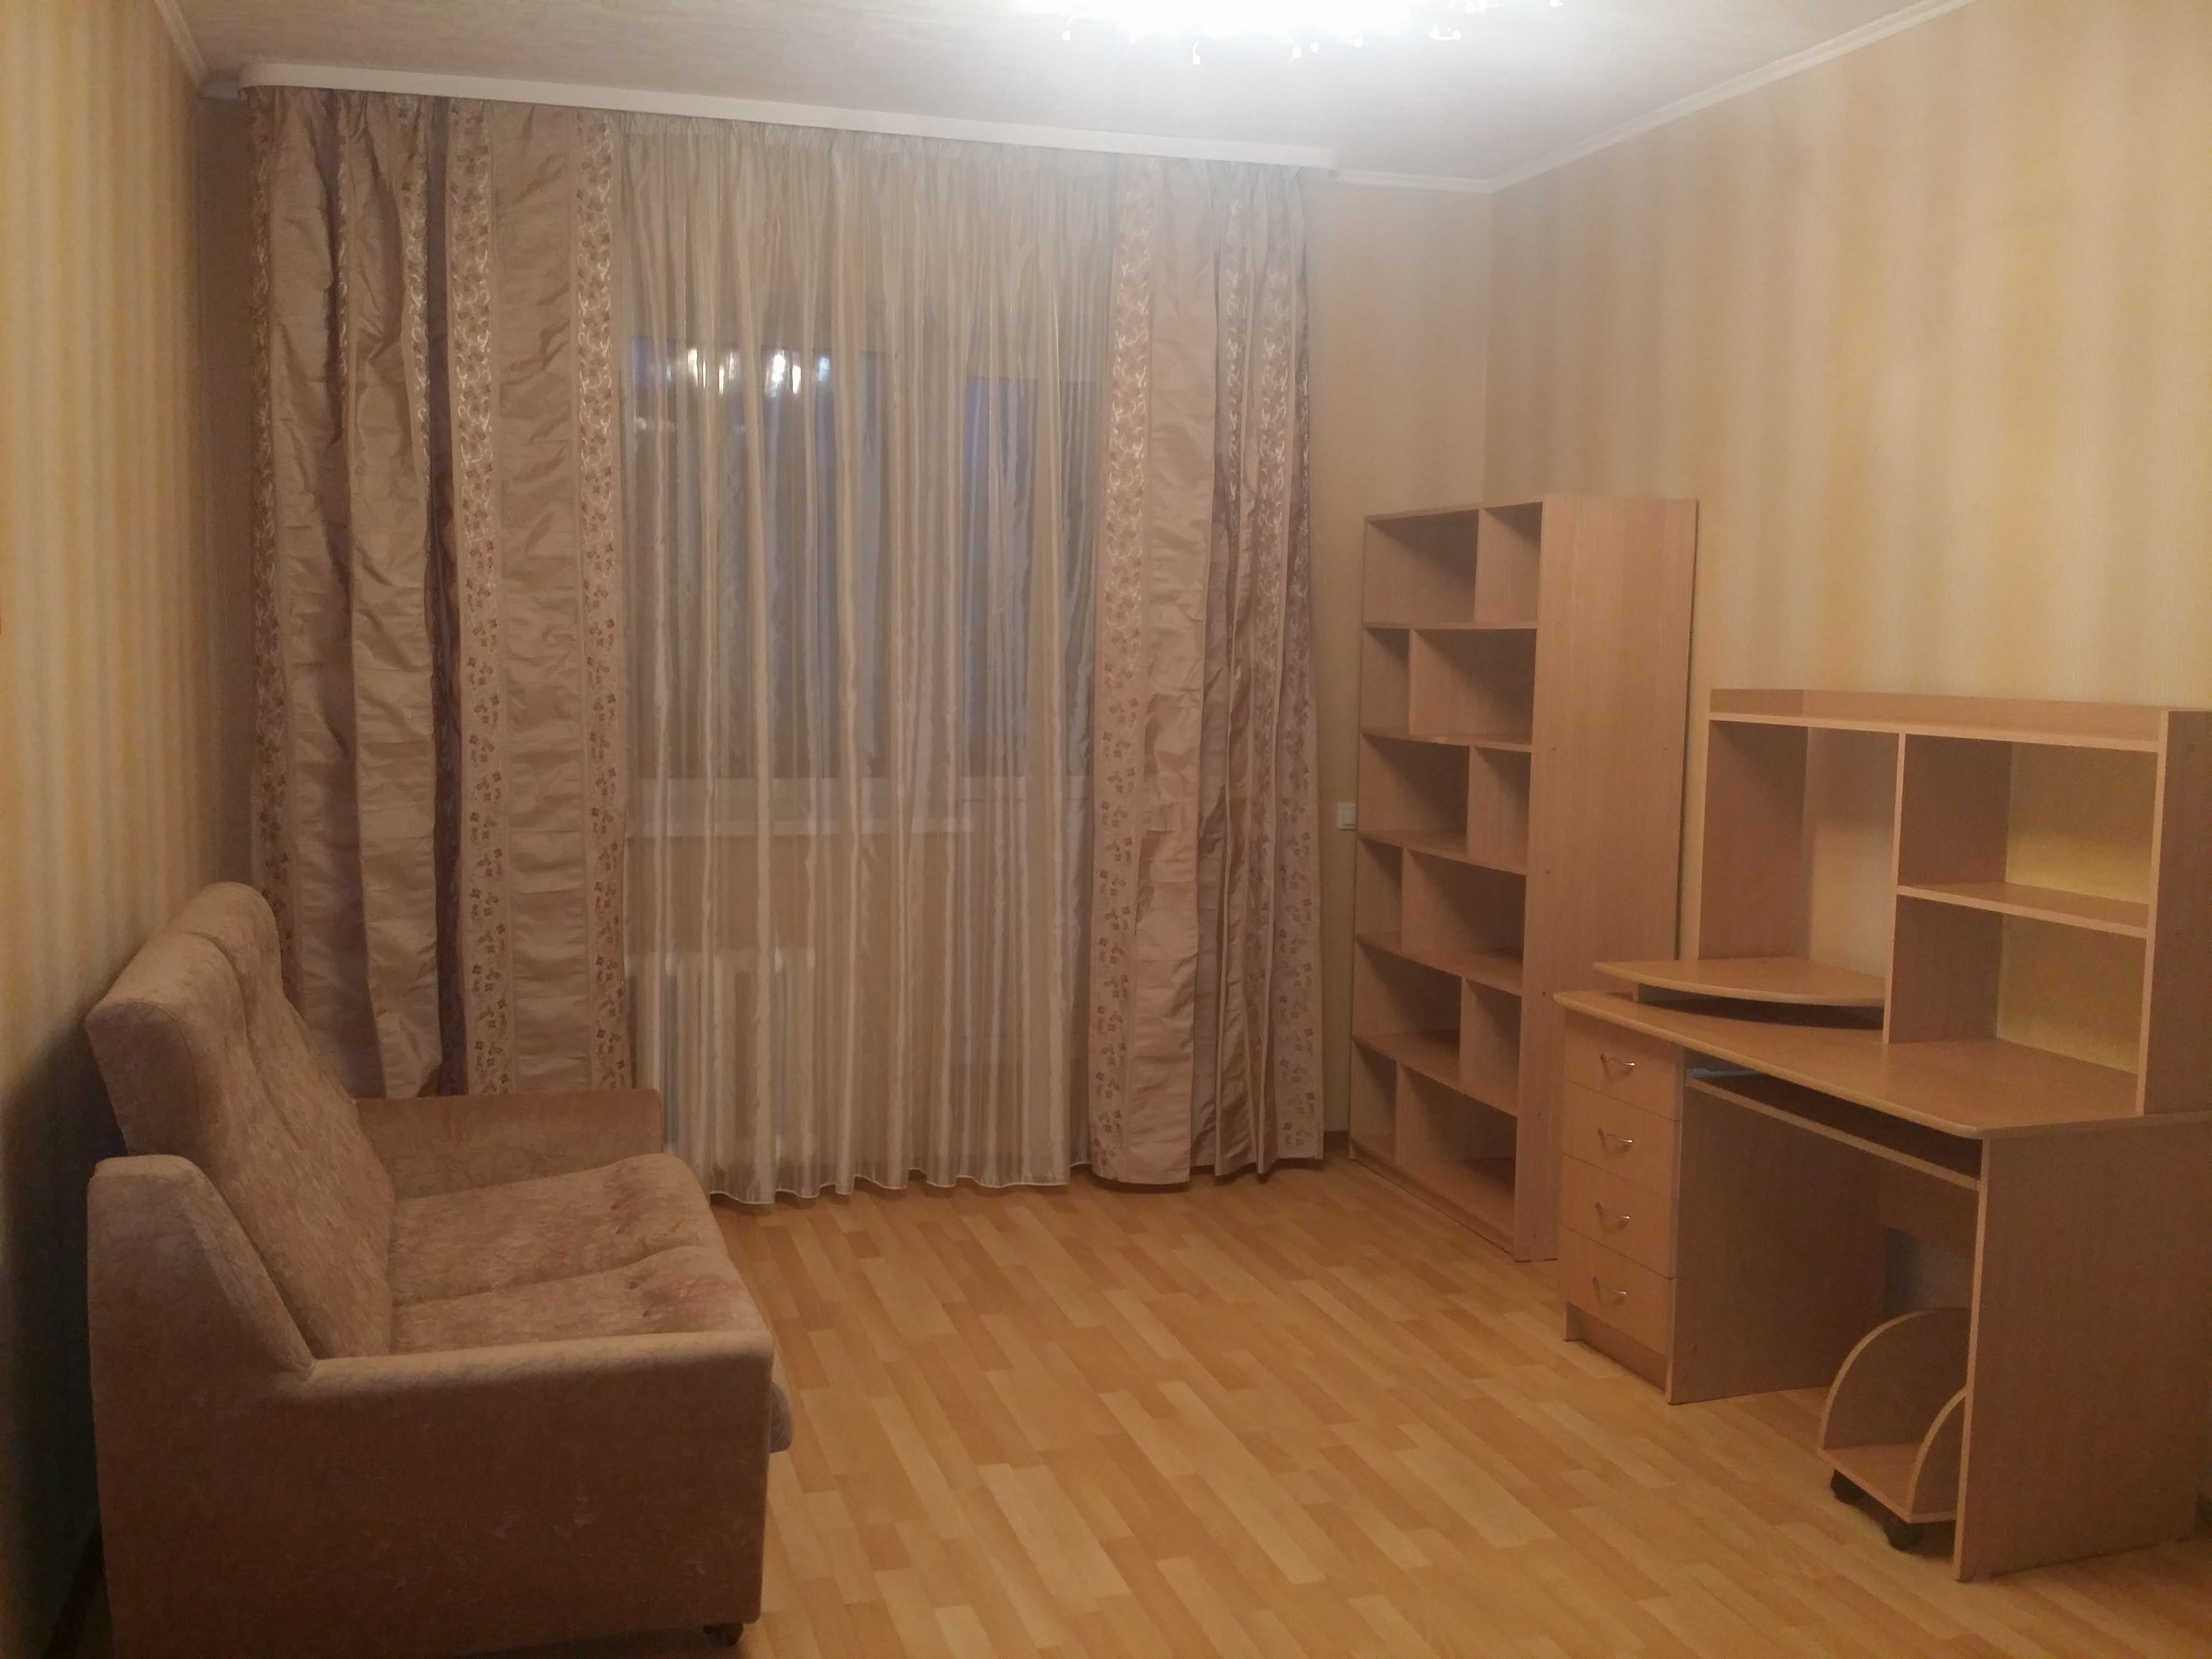 Однокомнатные квартиры в Железнодорожном районе города Ульяновска. Авито ульяновск квартиры объявления